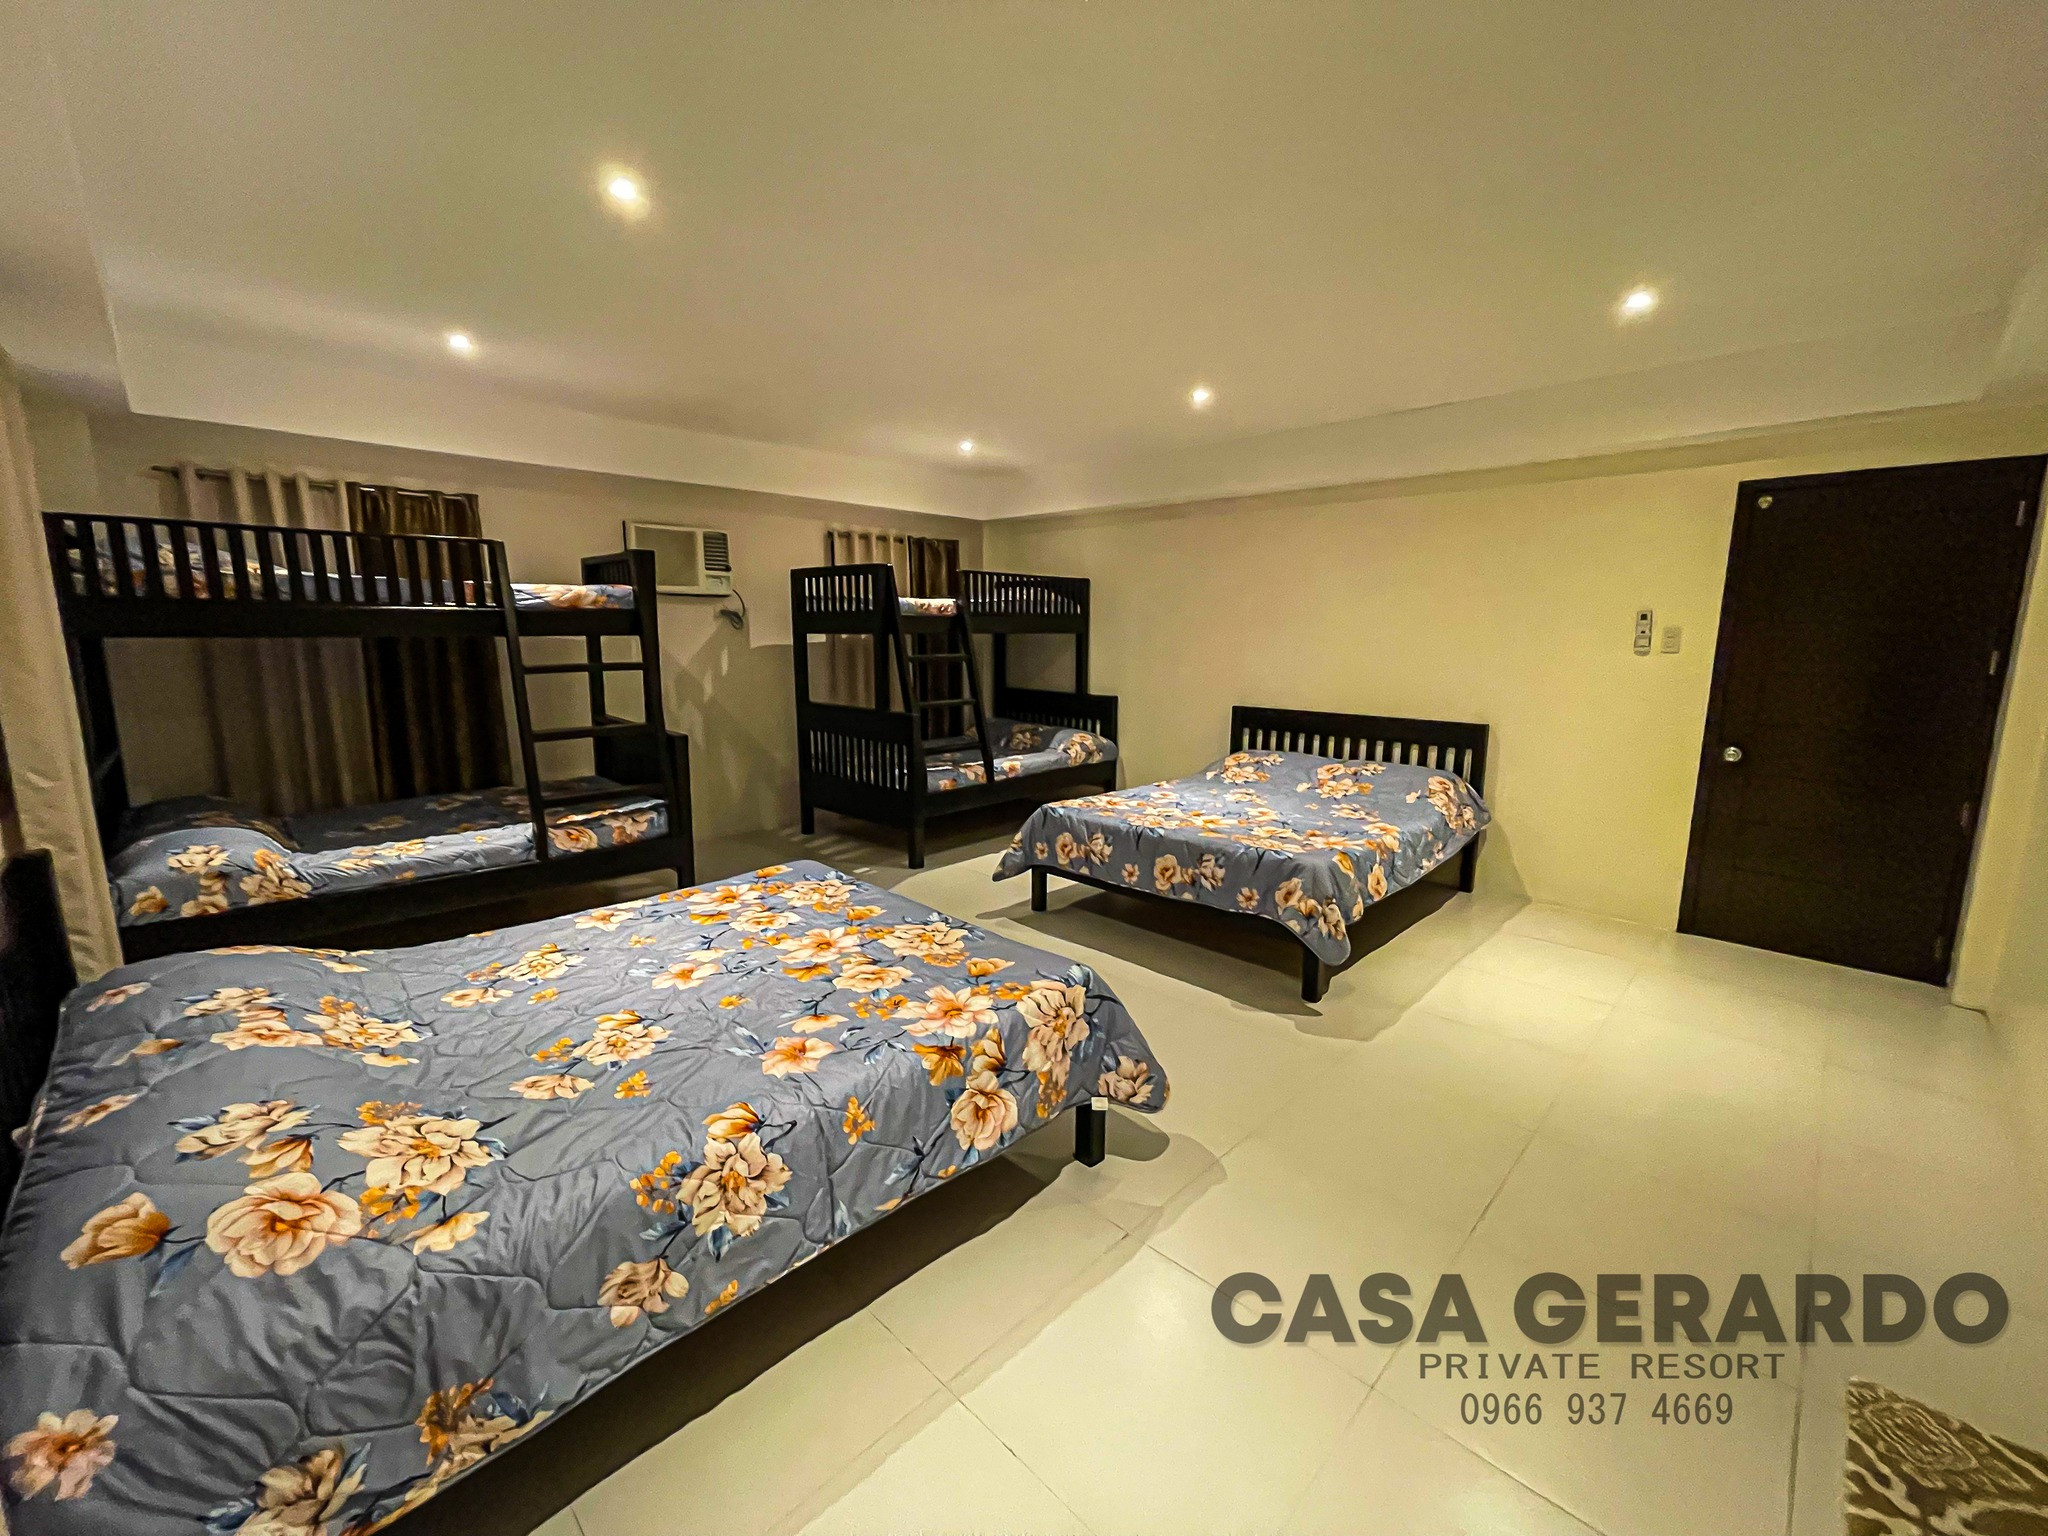 Casa Gerardo Private Resort